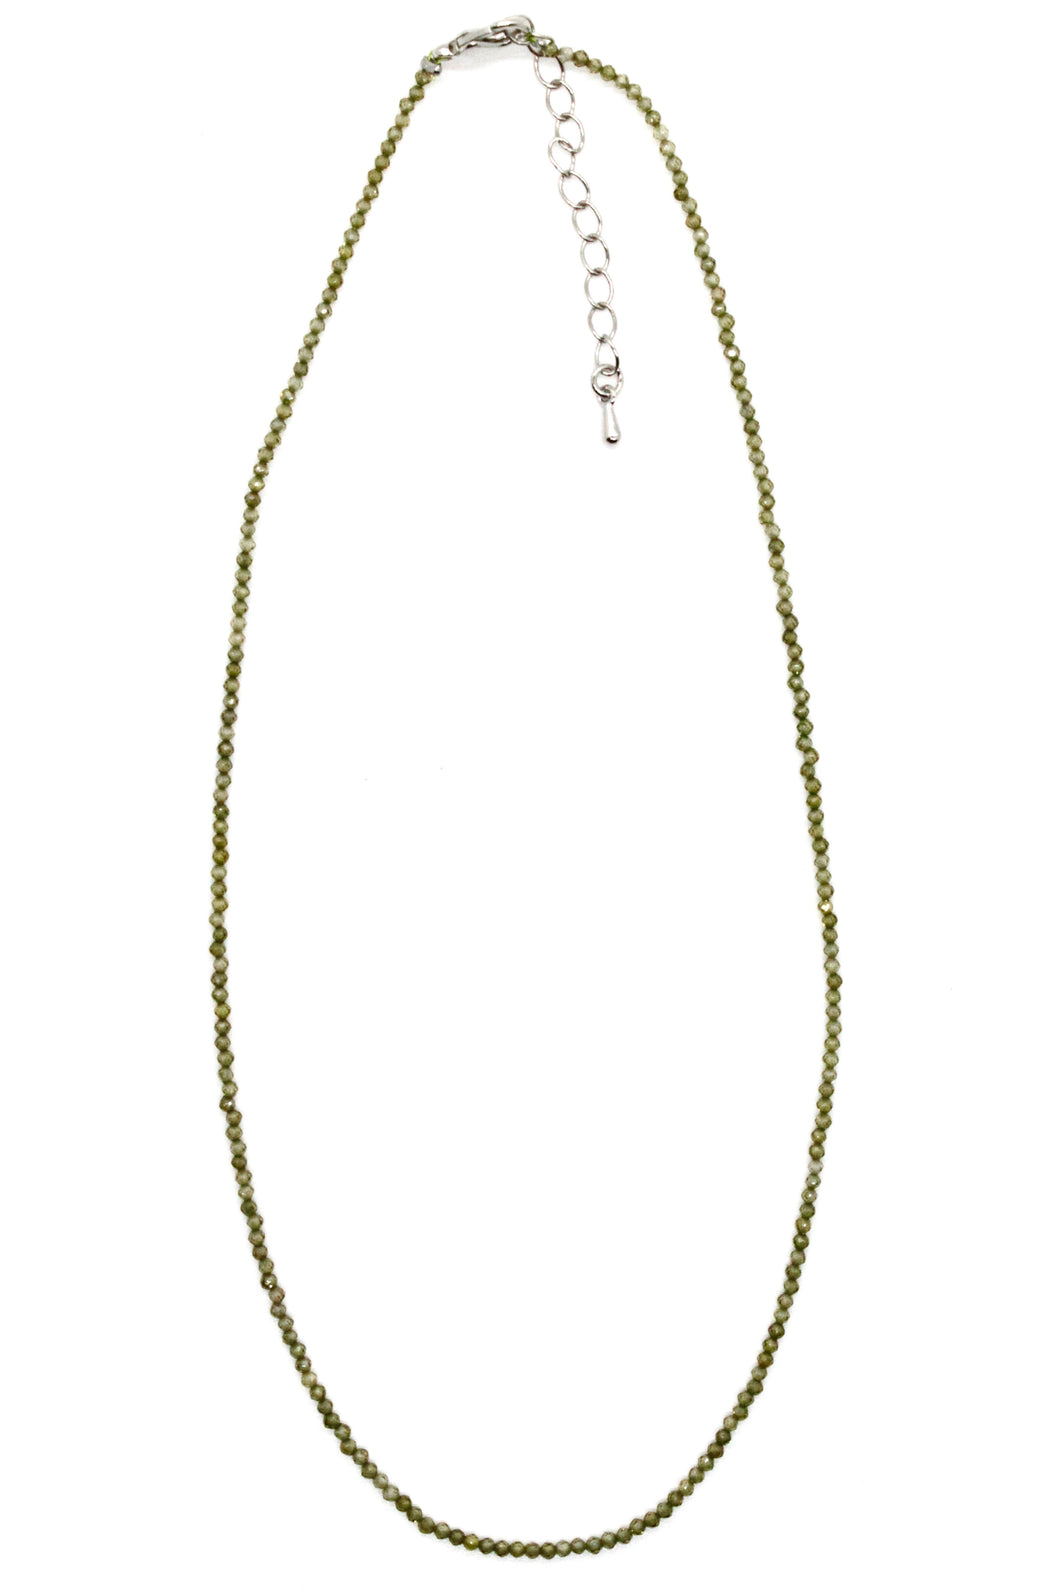 Mini Faceted Semi Precious Stone Necklace - Green Zircon - NS-002